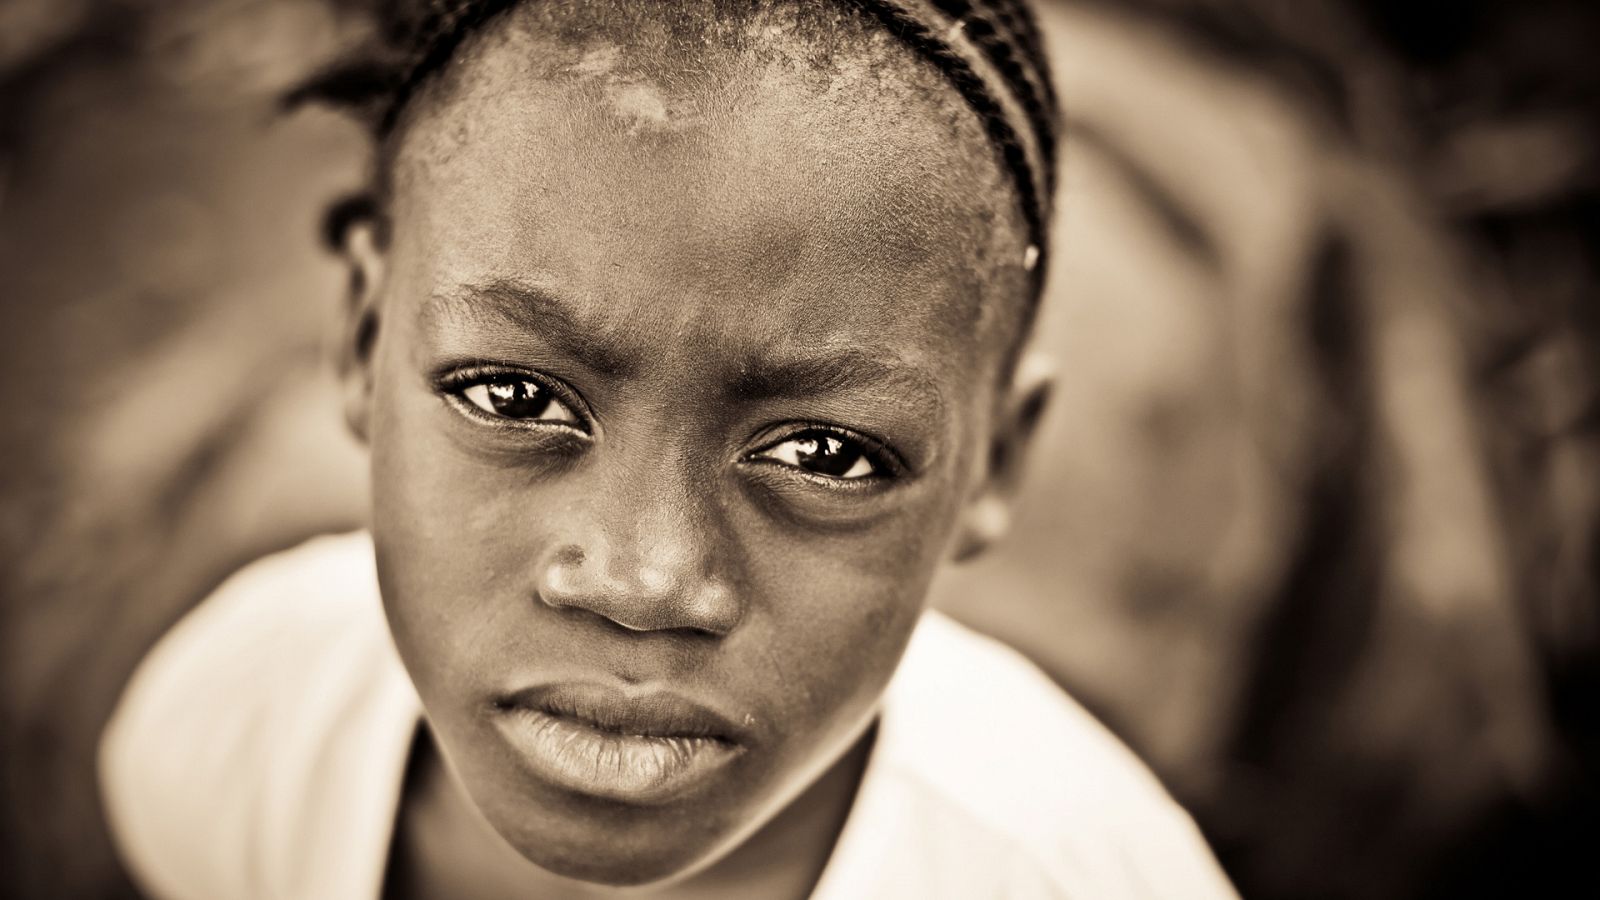 Somos Documentales - Matrimonio infantiles. En el corazón de África